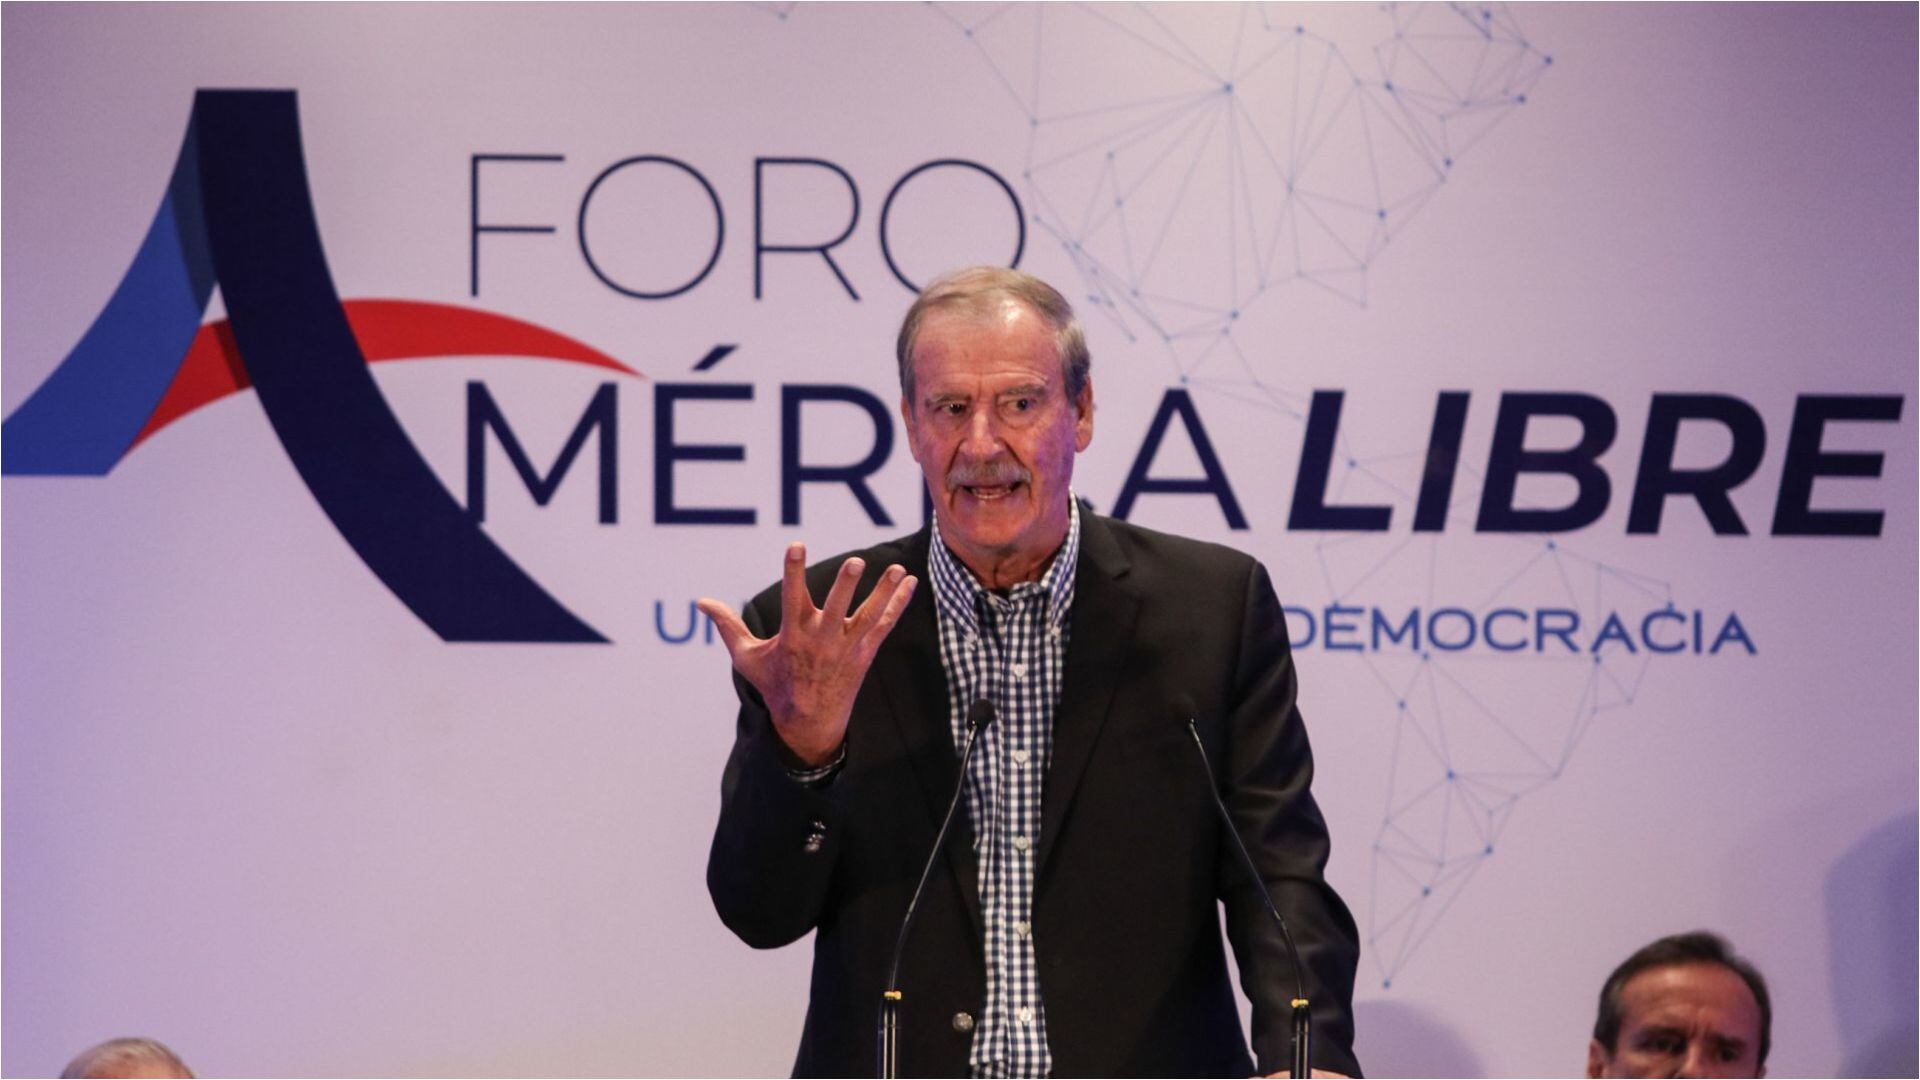 Vicente Fox-América Libre-México-26 de octubre